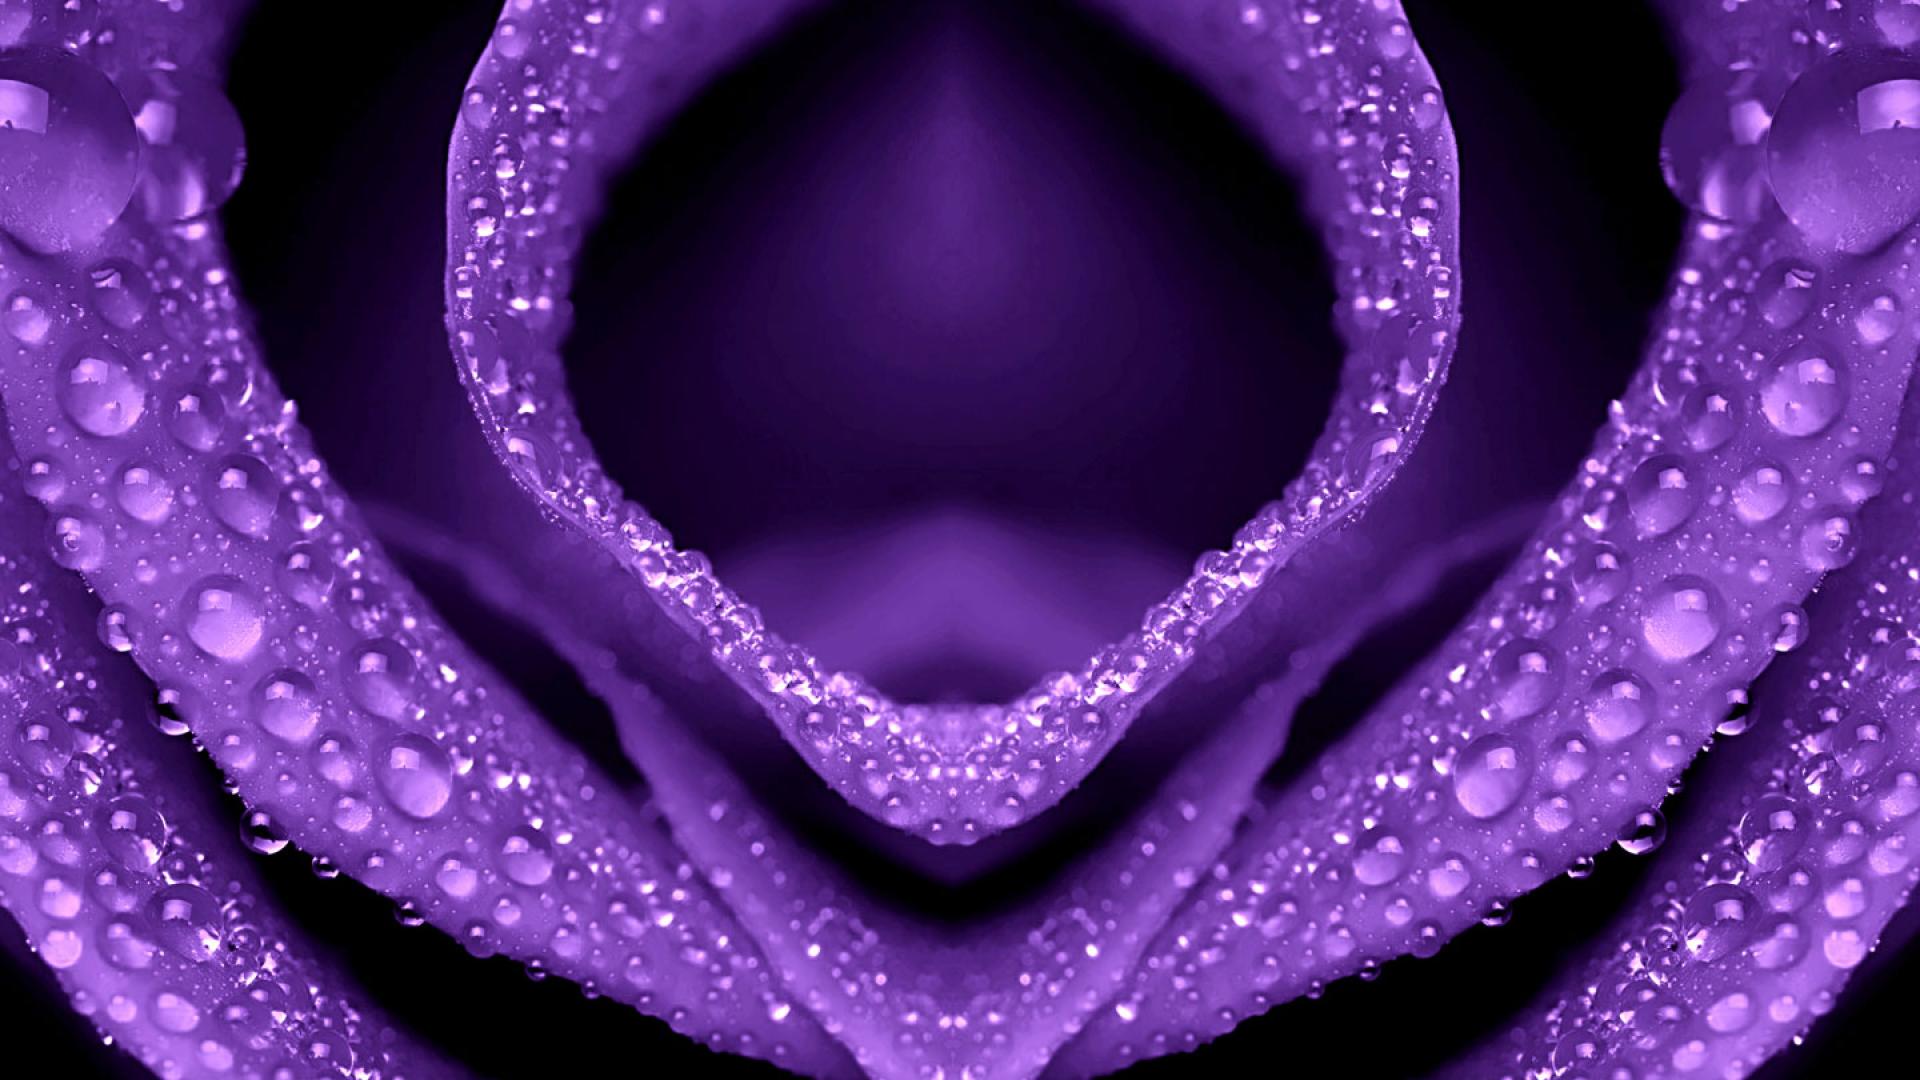 Purple Hd Wallpaper - WallpaperSafari